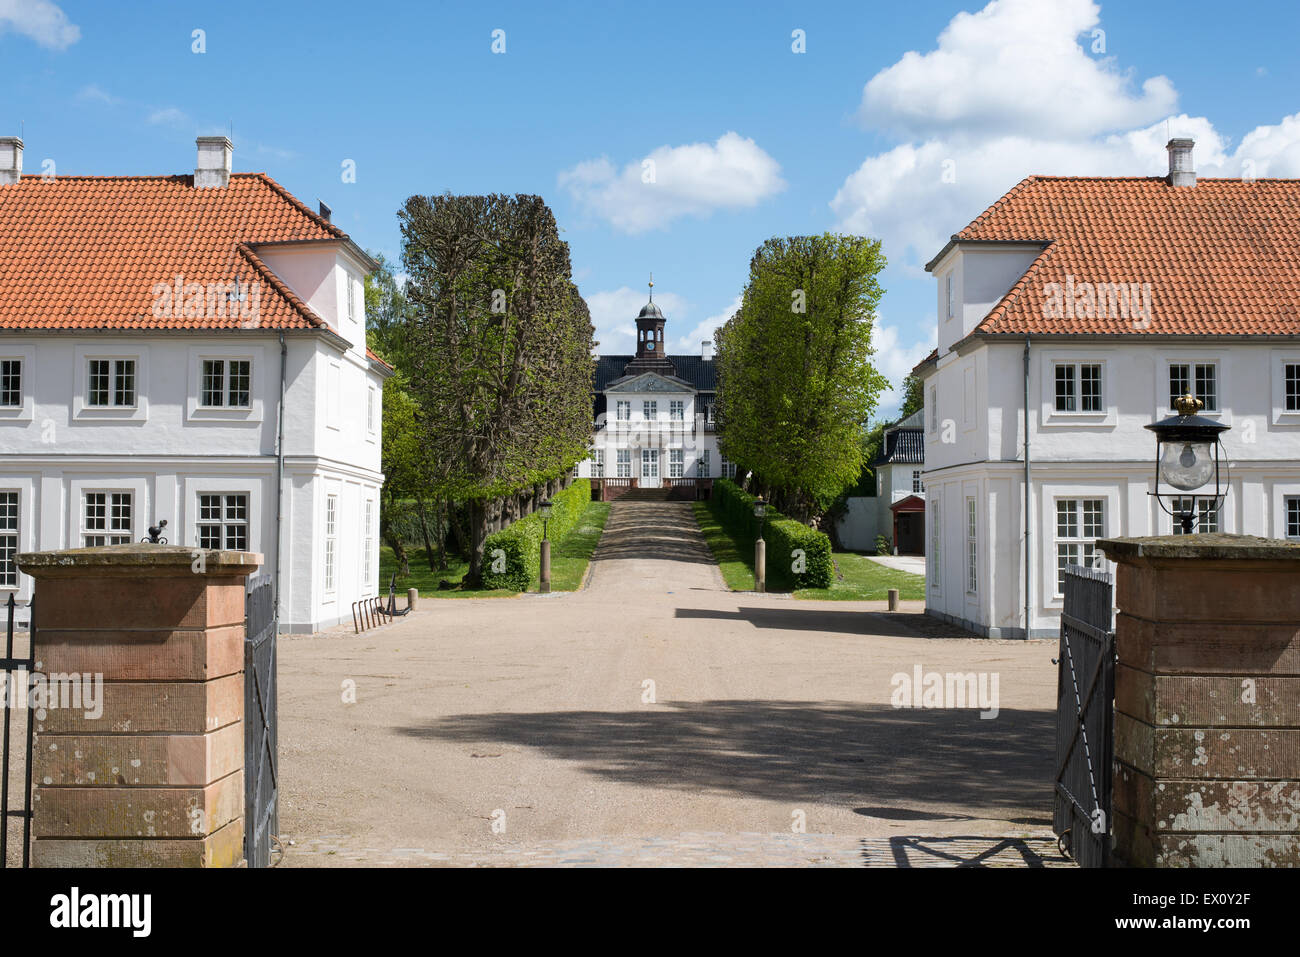 Sorgenfri slot, castle sorgenfri palace in Lyngby, Denmark Stock Photo